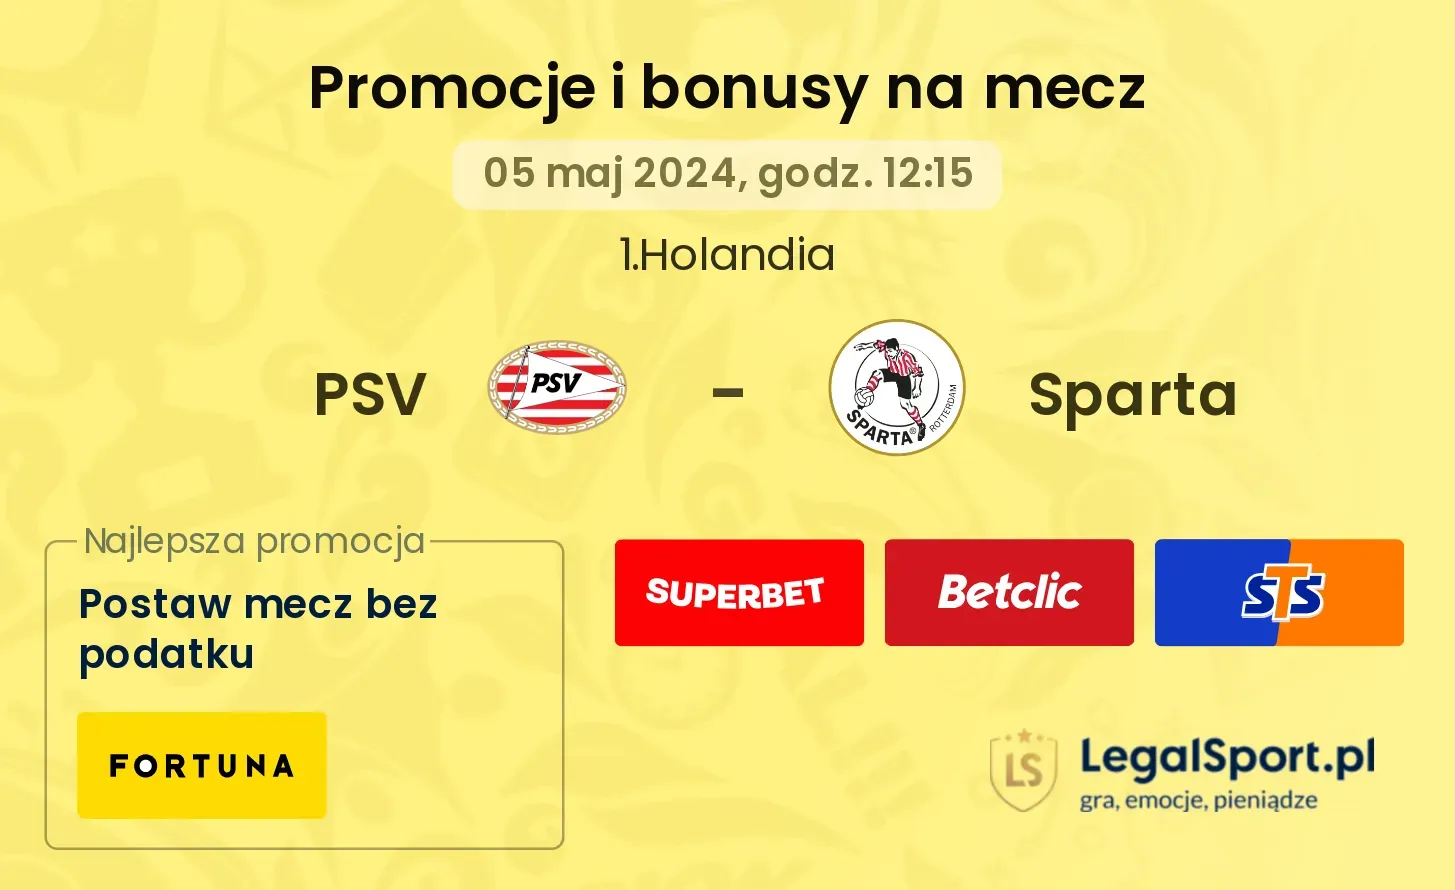 PSV - Sparta promocje bonusy na mecz